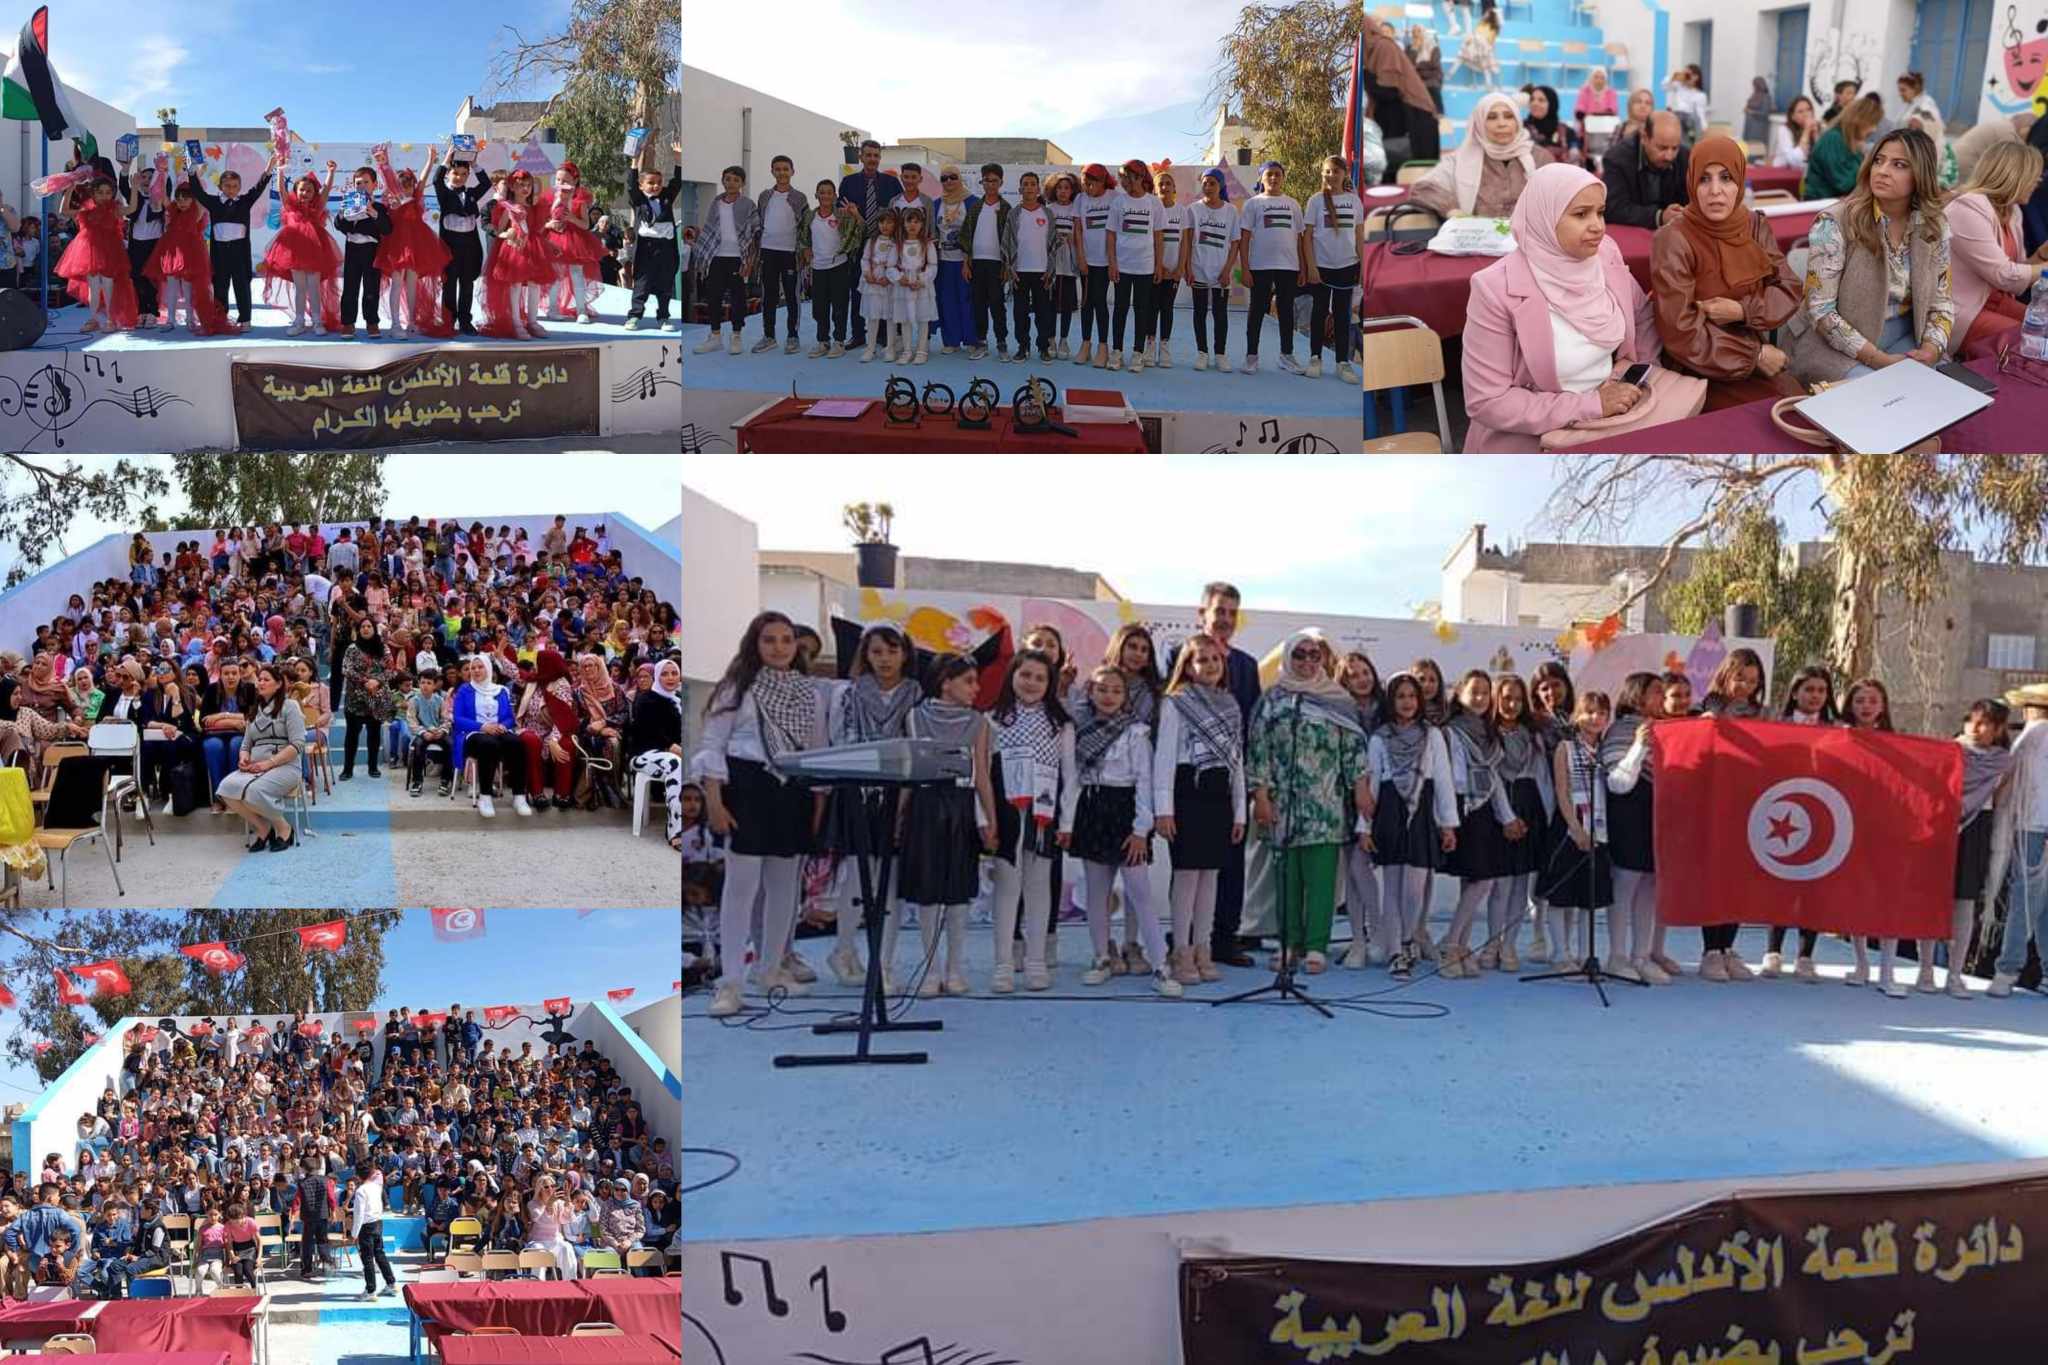 تظاهرة "أنا سعيد في مدرستي" بمشاركة تلاميذ المدارس الابتدائية بقلعة الاندلس 